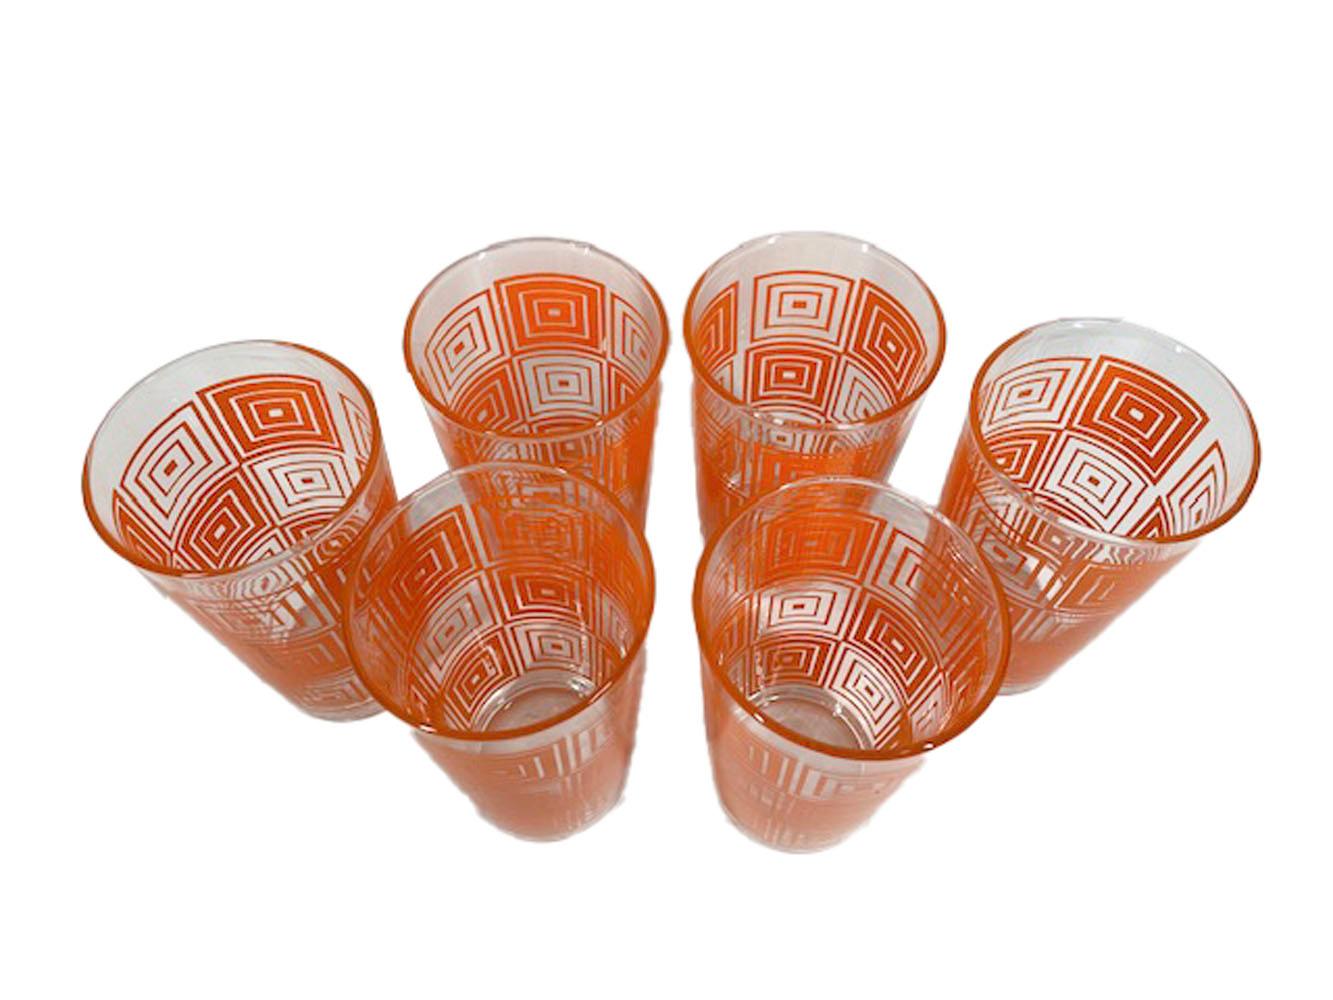 Six gobelets modernes du milieu du siècle par Federal Glass avec des blocs de carrés concentriques en émail orange, les blocs alternés sont composés de lignes plus étroites ou plus larges créant un effet optique.